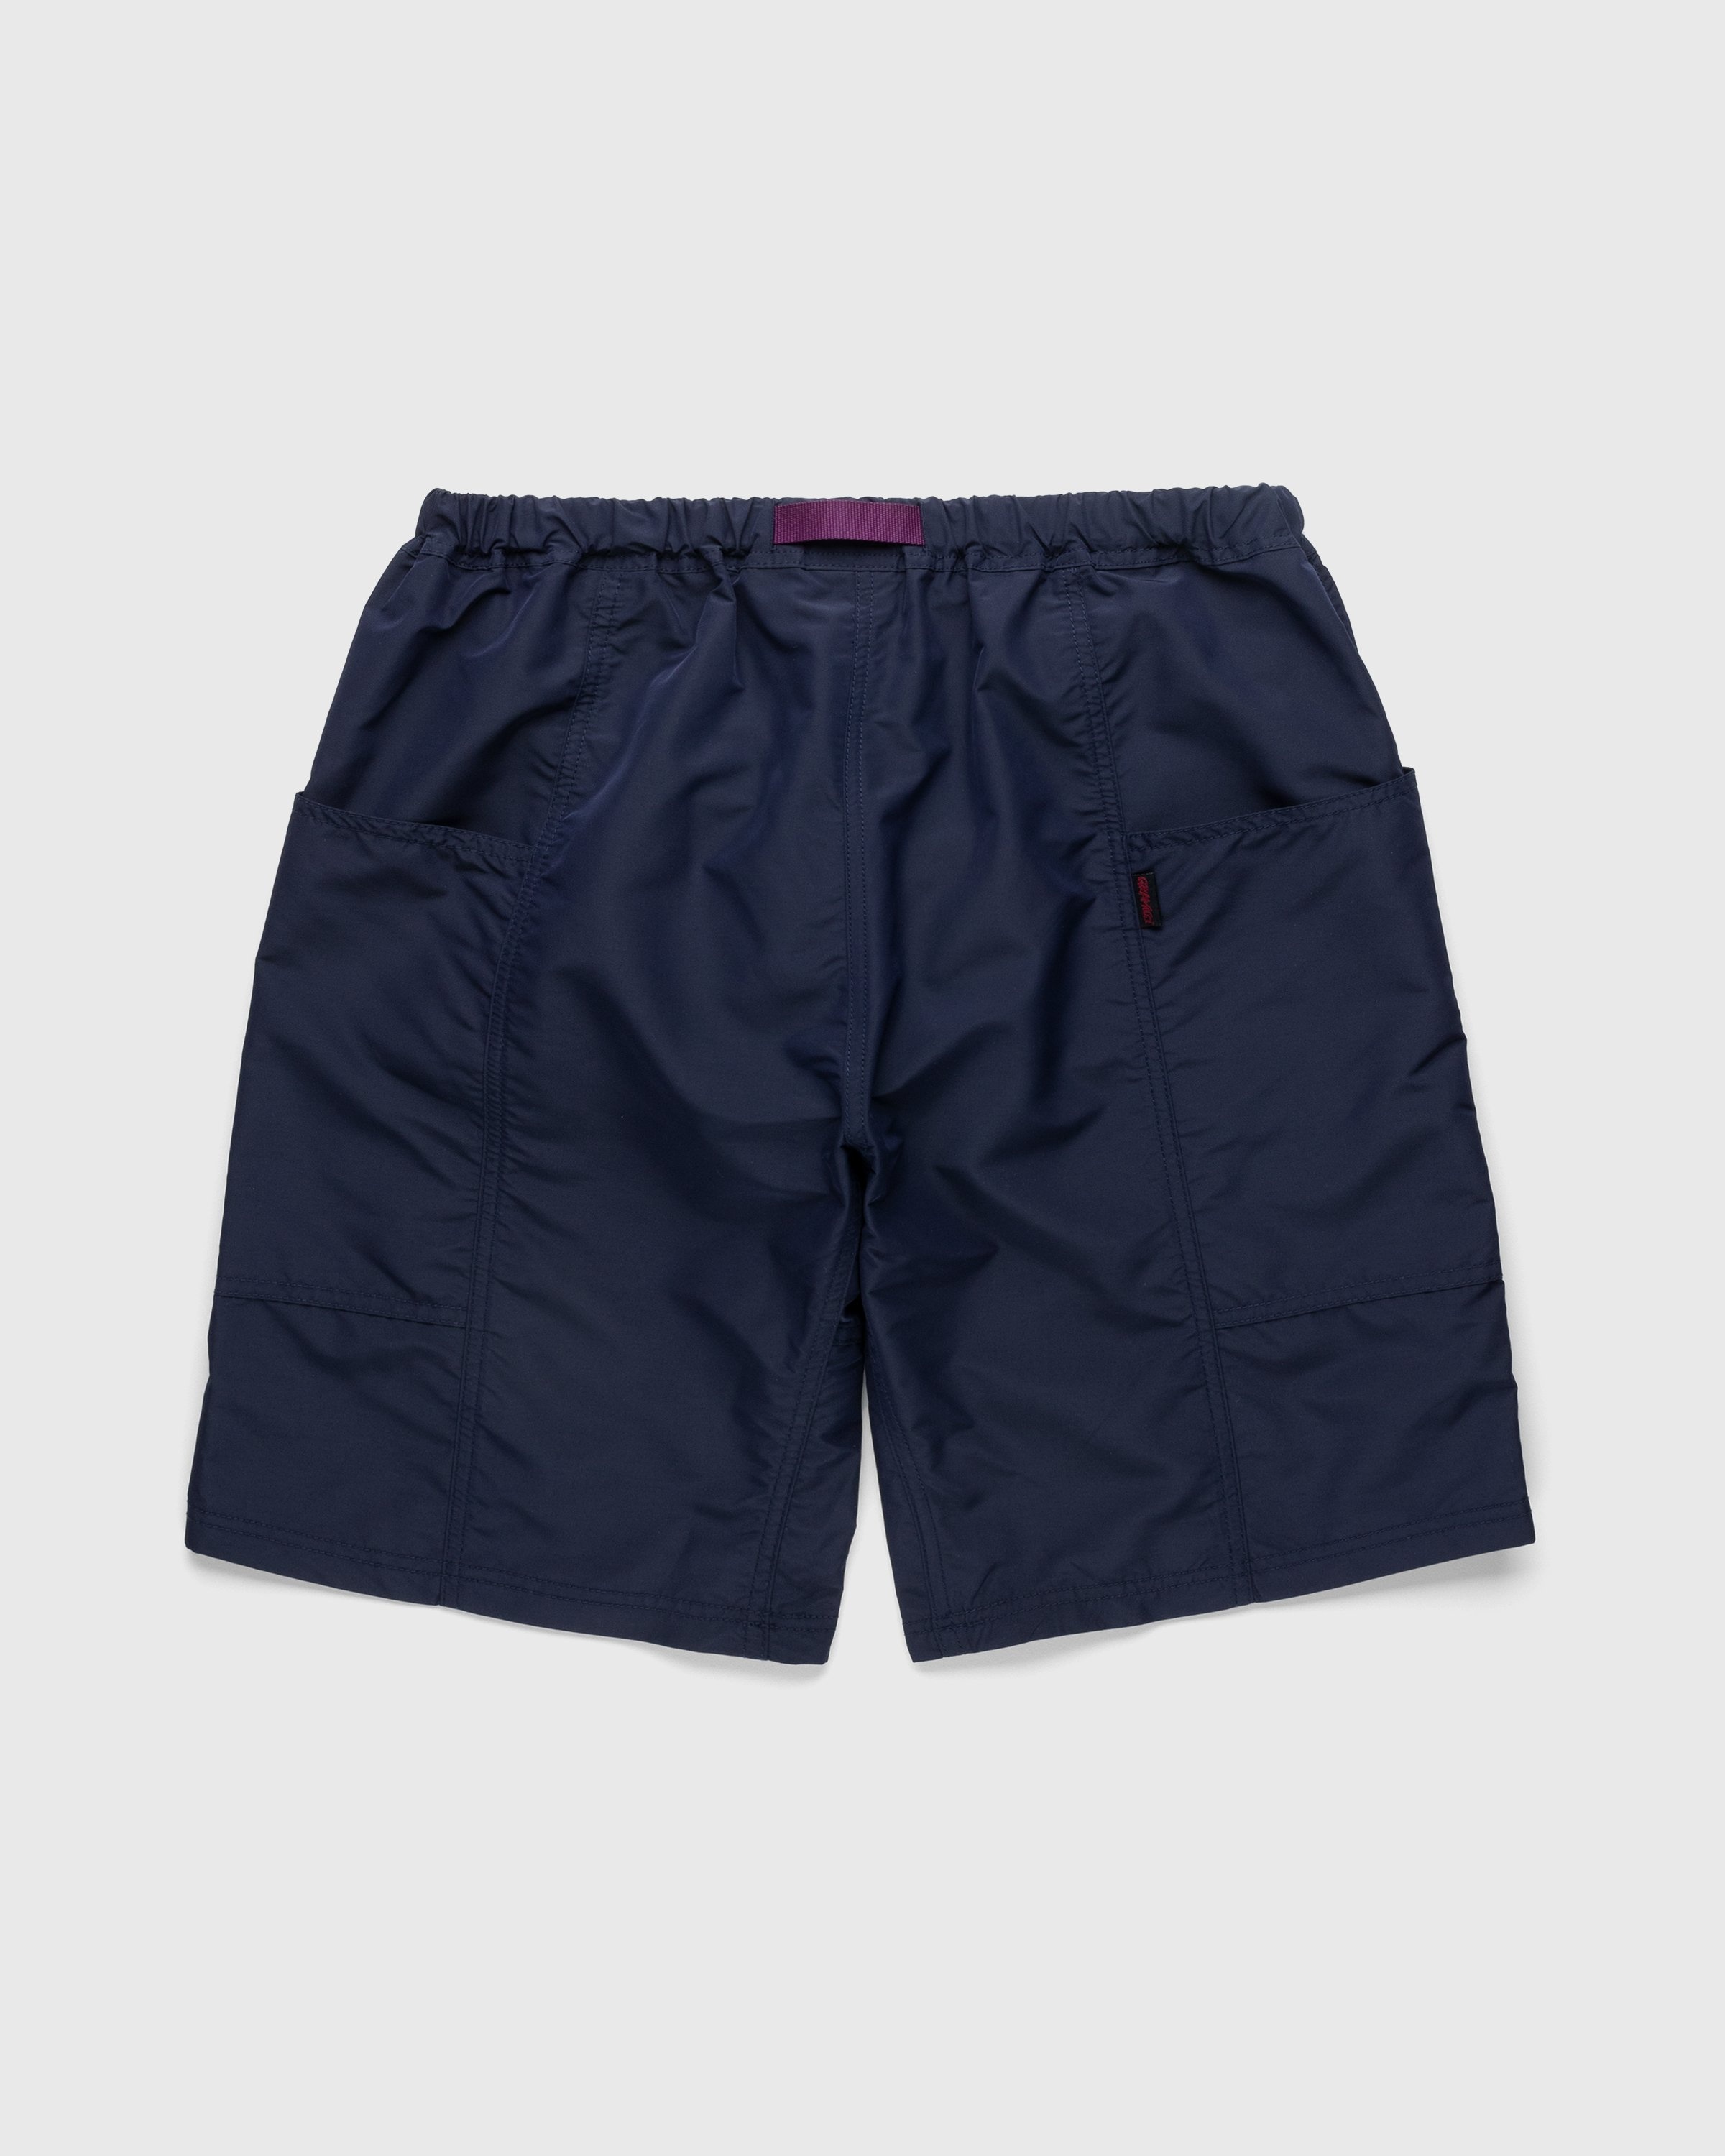 Gramicci – Shell Gear Shorts Navy - Shorts - Blue - Image 2